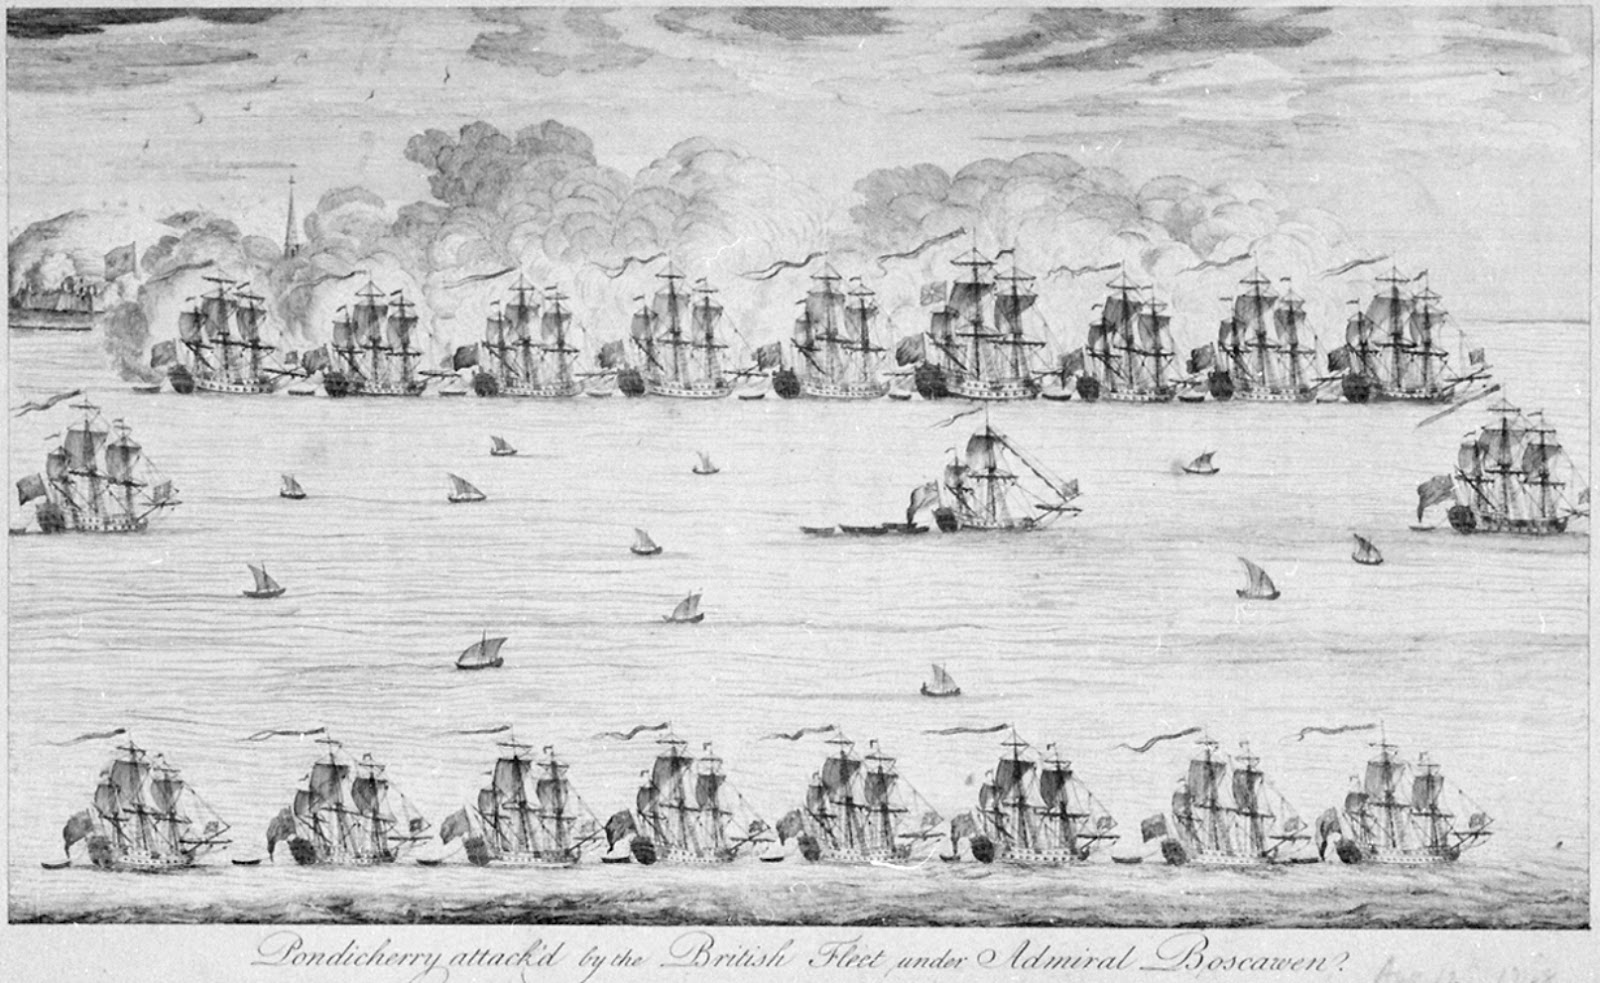 Pondicherry Attacked by the British Fleet